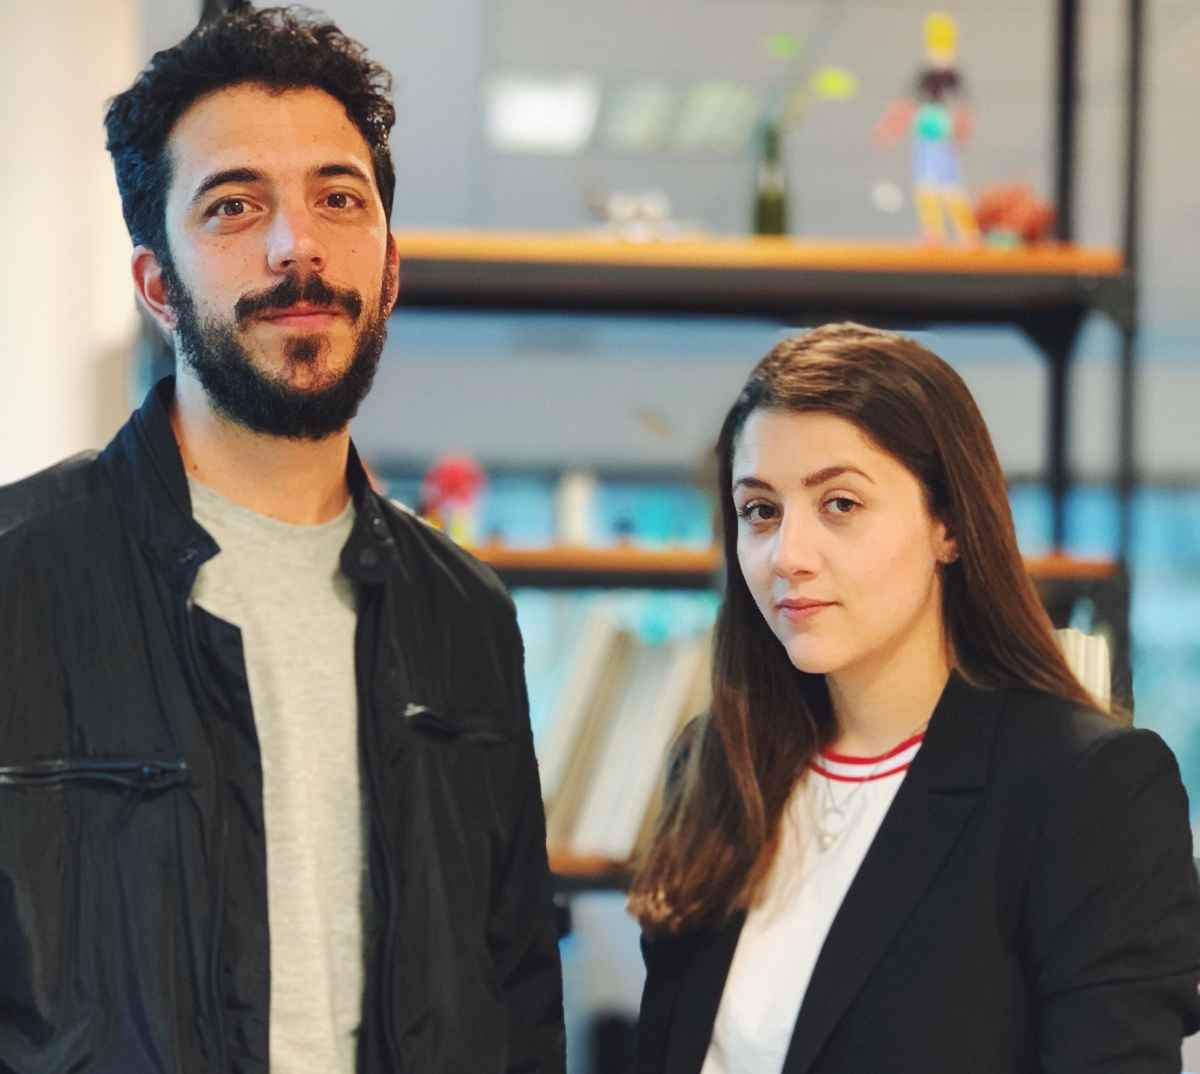 Portada de NuevaMente: Lucía Parodi, Digital Manager, y Martín Rubins, Strategy Lead, de BBDO.